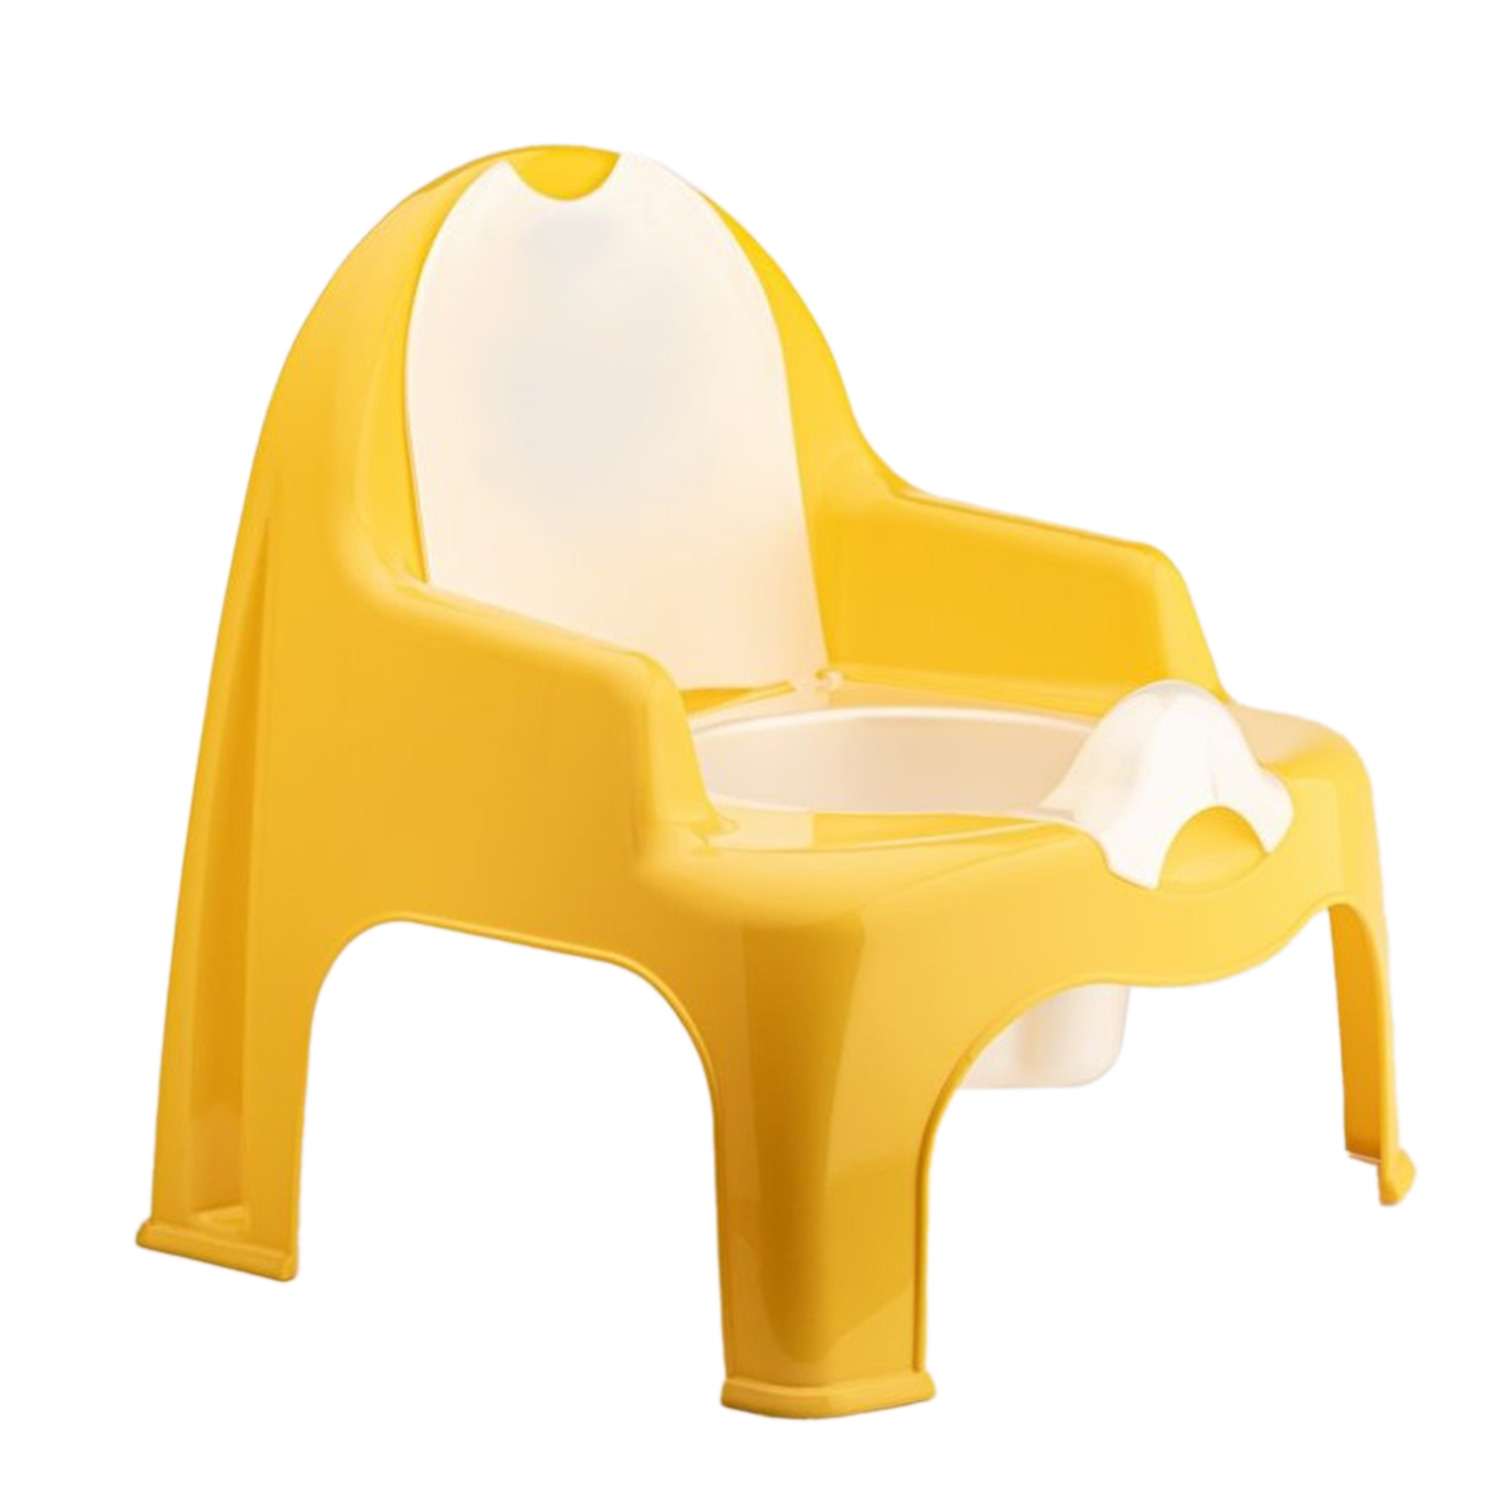 Горшок детский elfplast стульчик желтый - фото 3